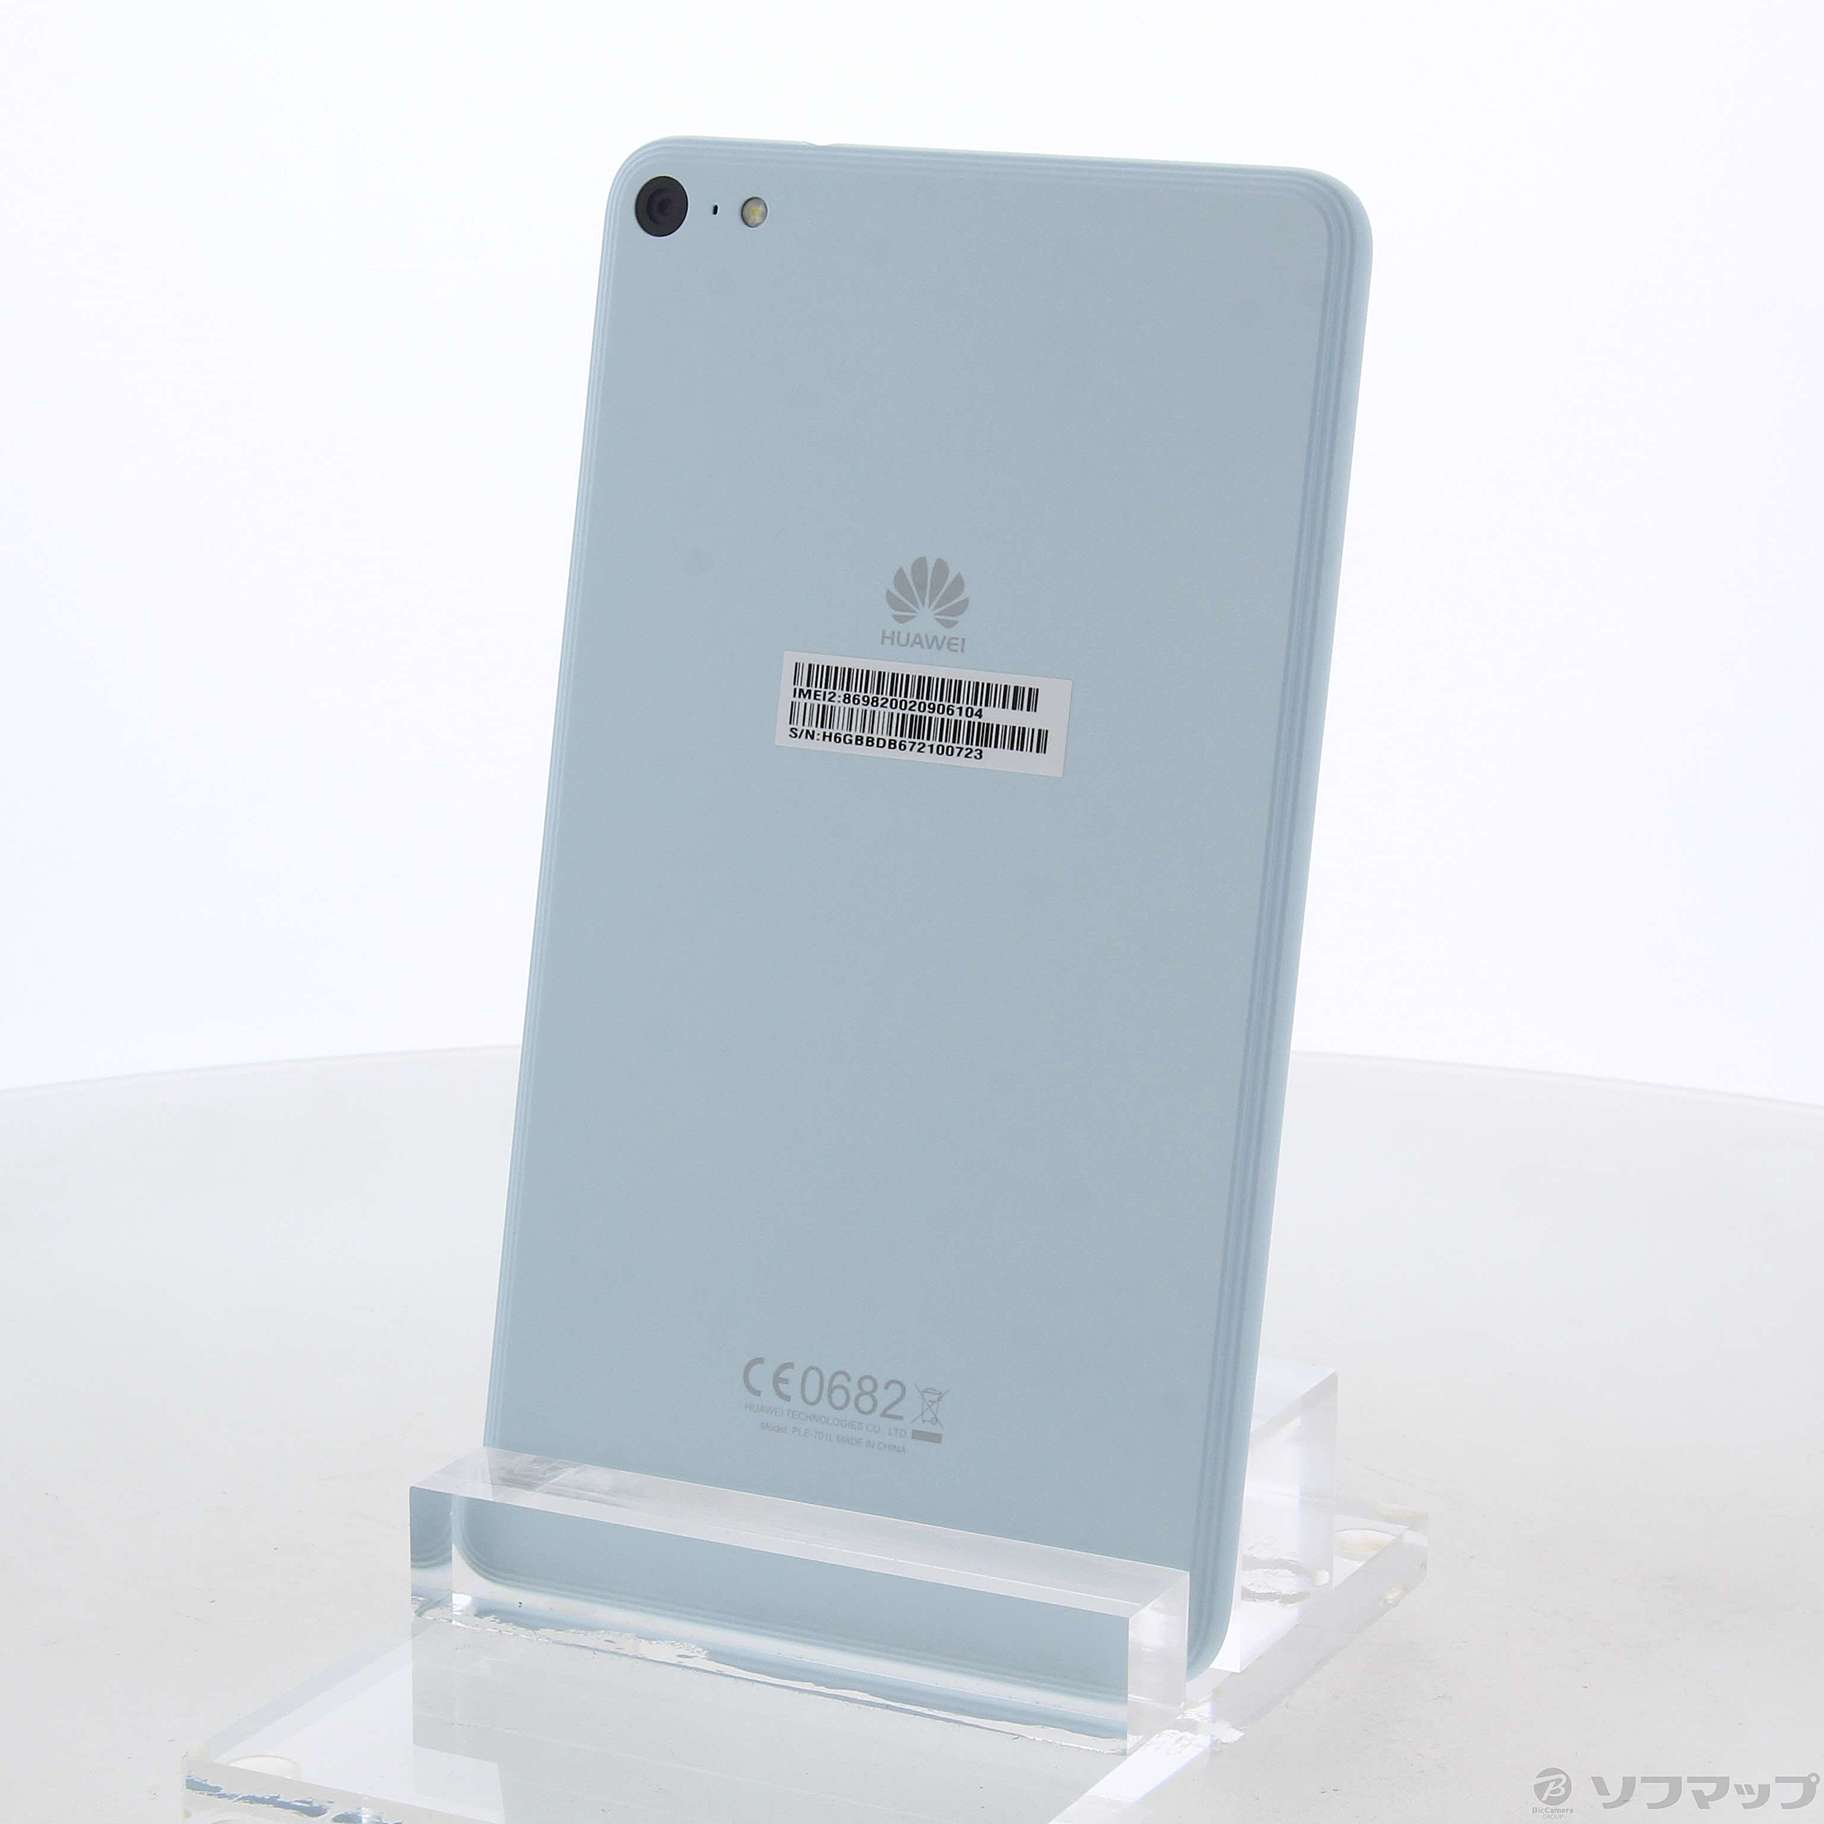 中古品〕 MediaPad T2 7.0 Pro 16GB ブルー PLE-701L-BLUE SIMフリー ...